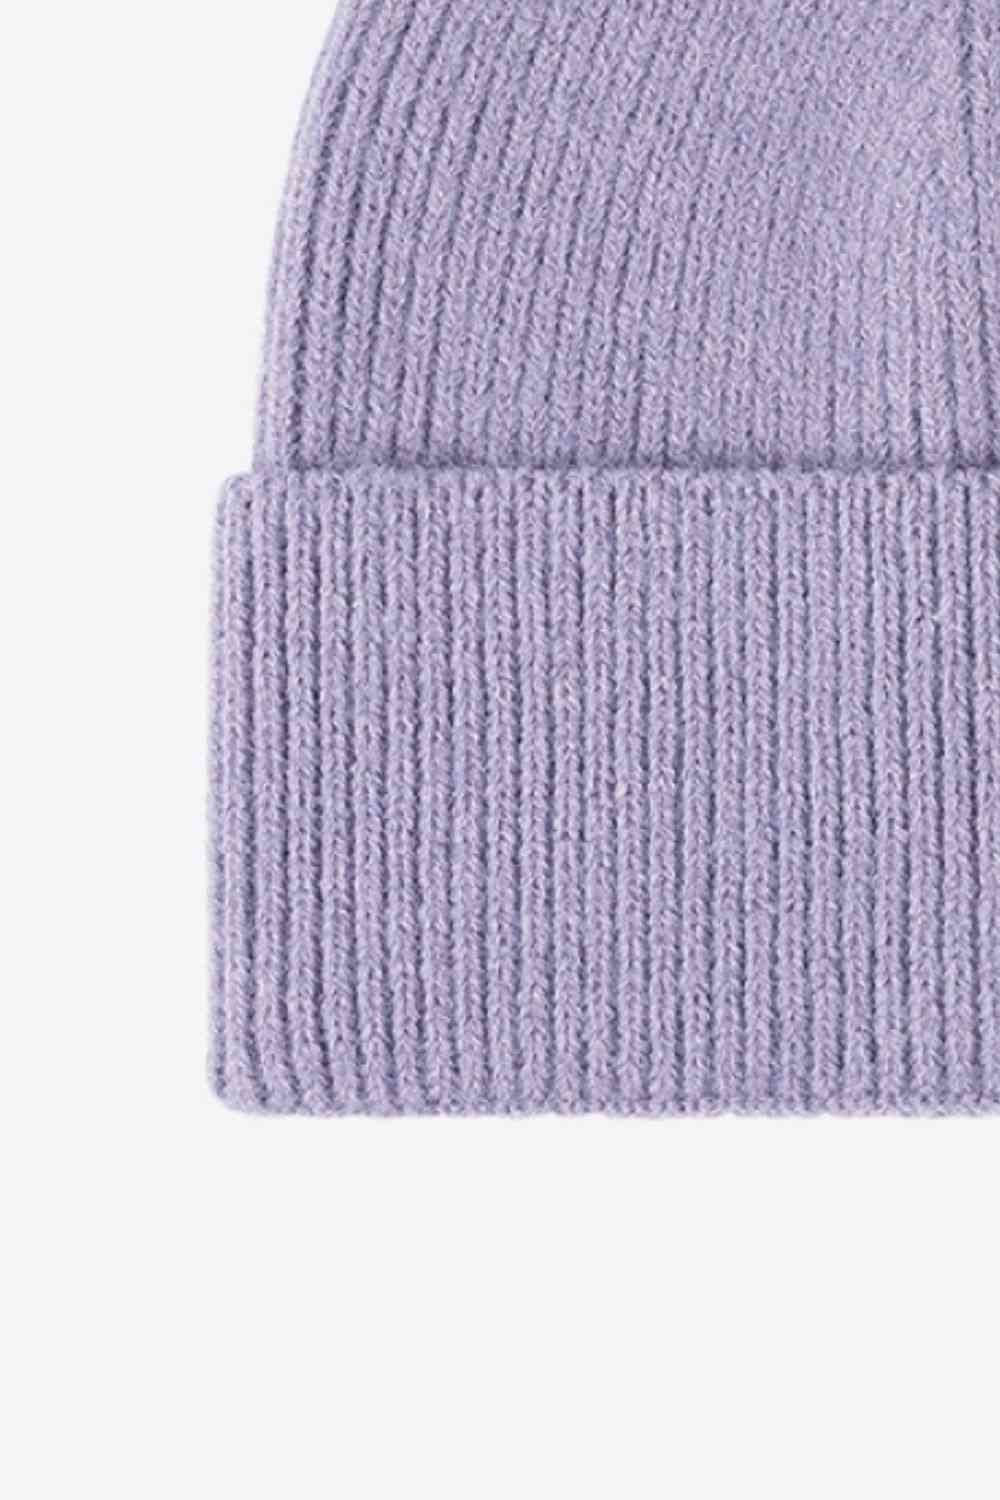 Bonnet tricoté chaud par temps froid